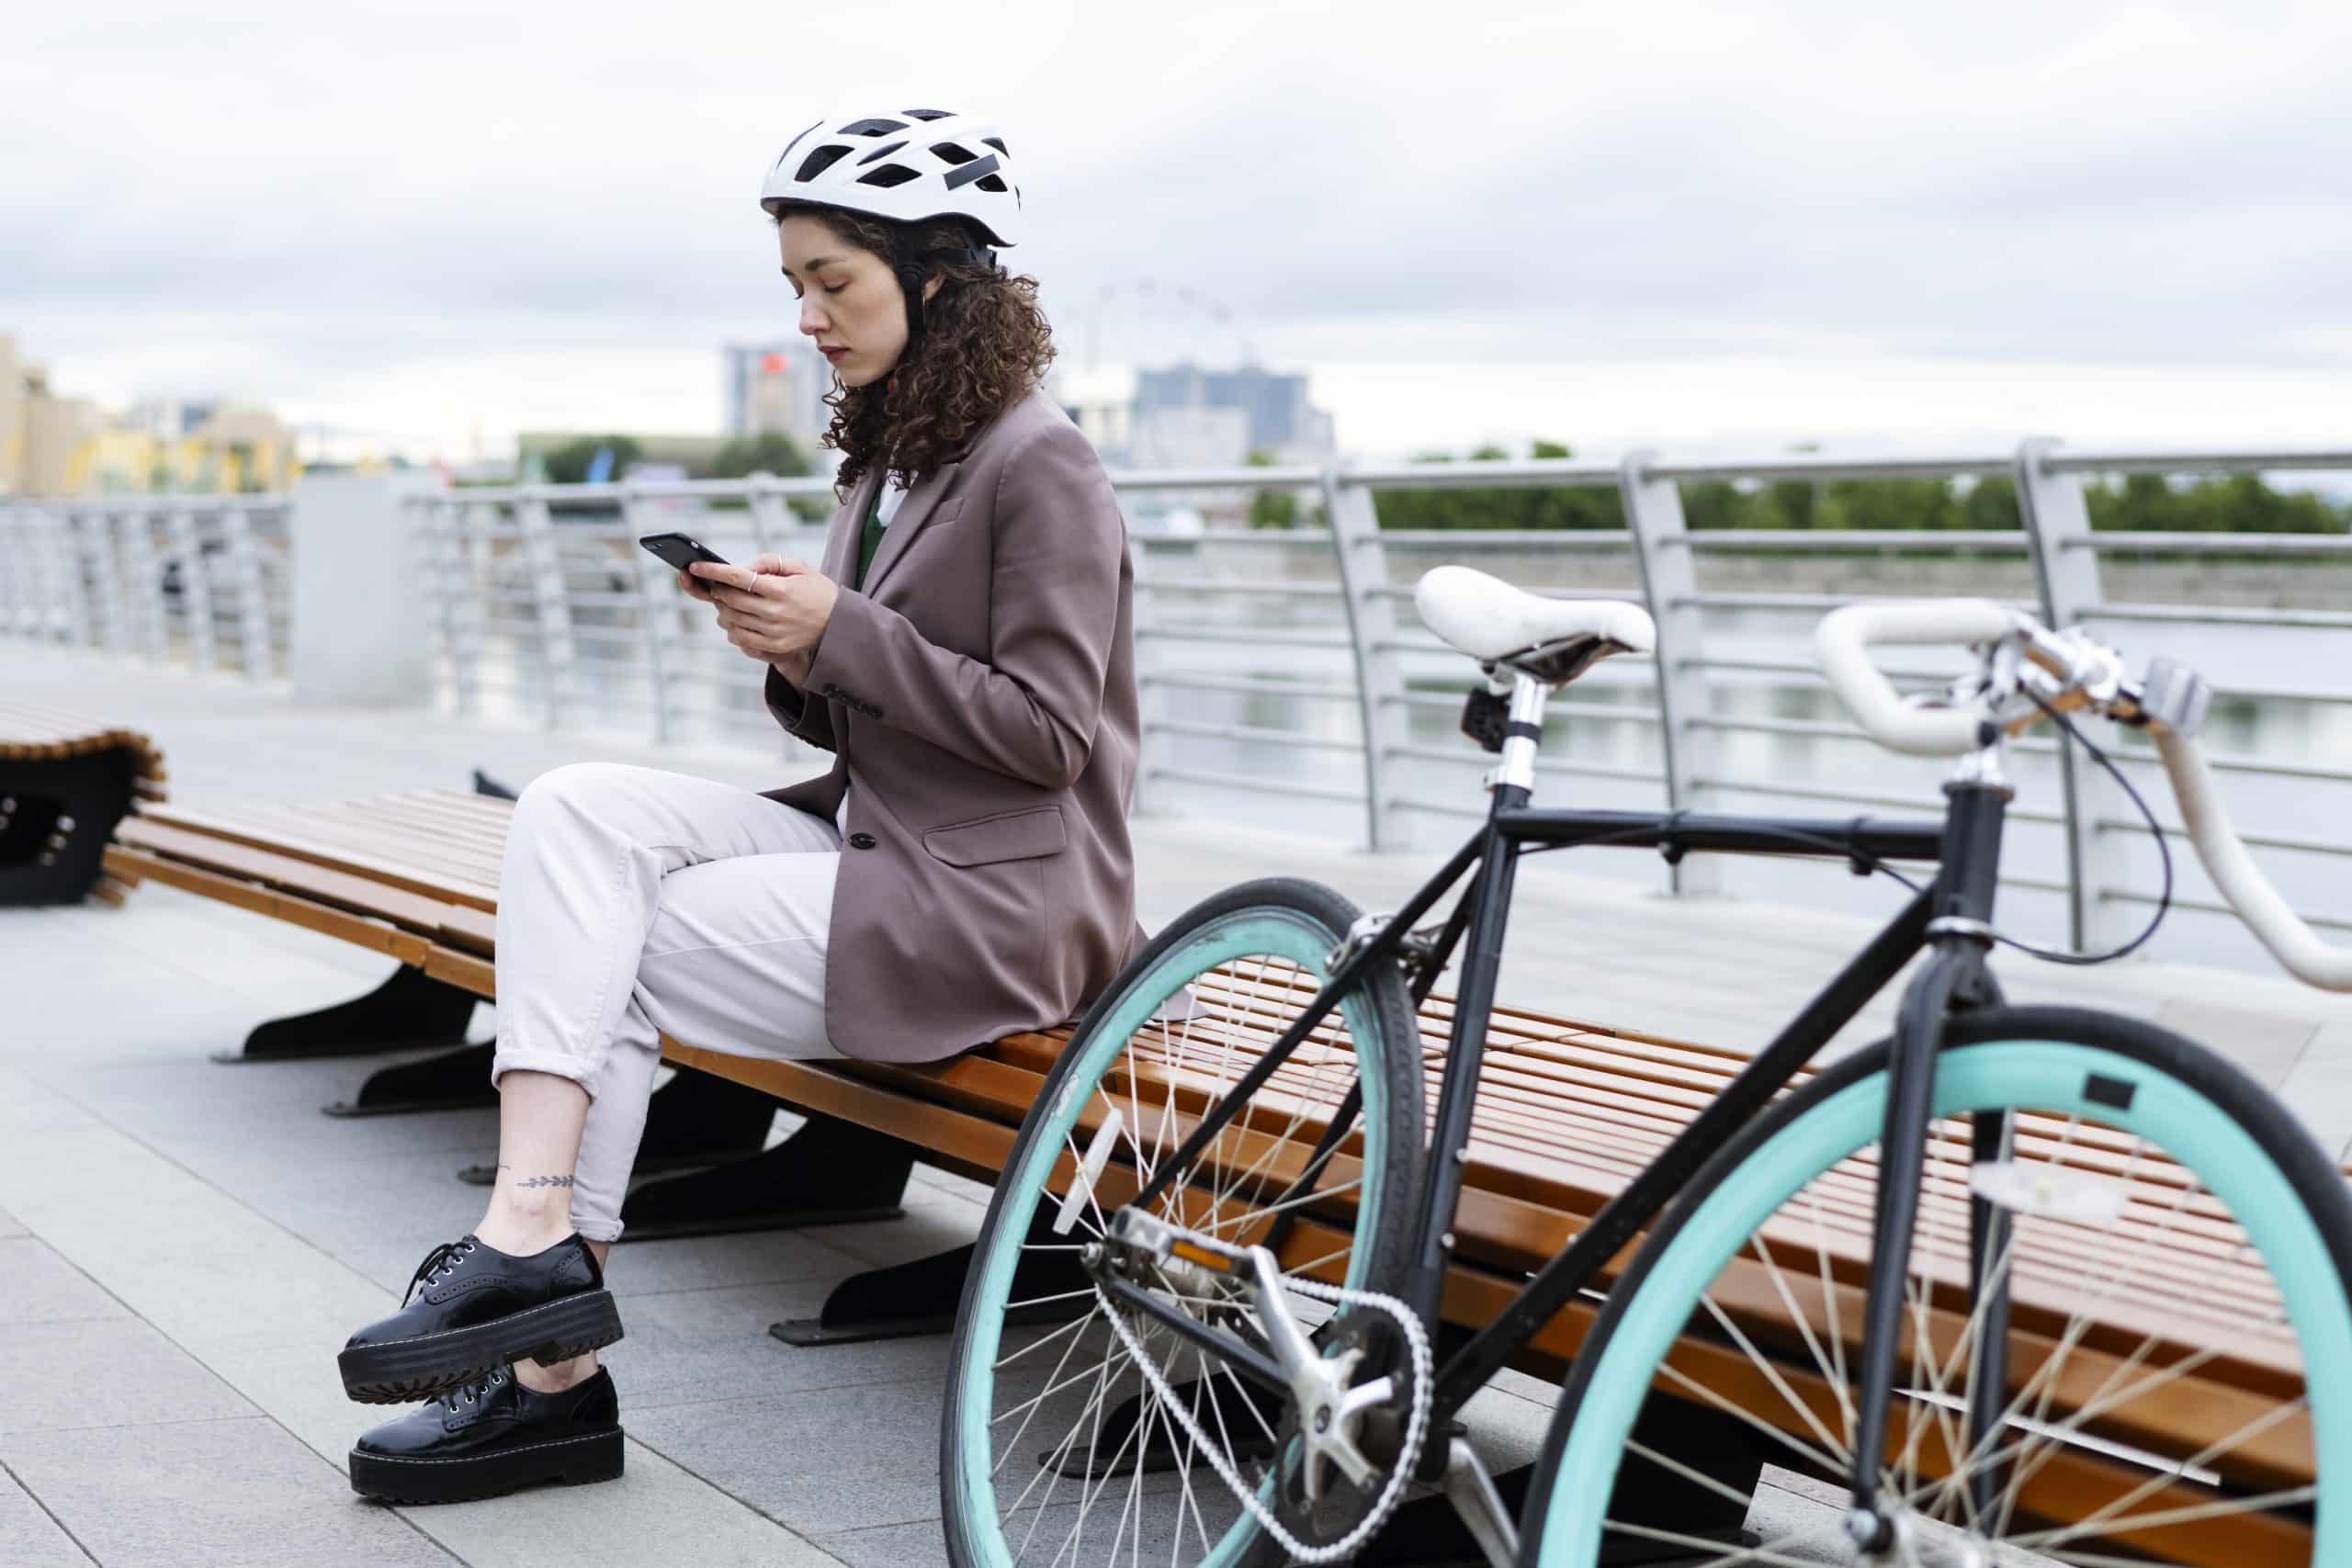 Sécurité et simplicité : les meilleures applications vélo pour cyclistes urbains